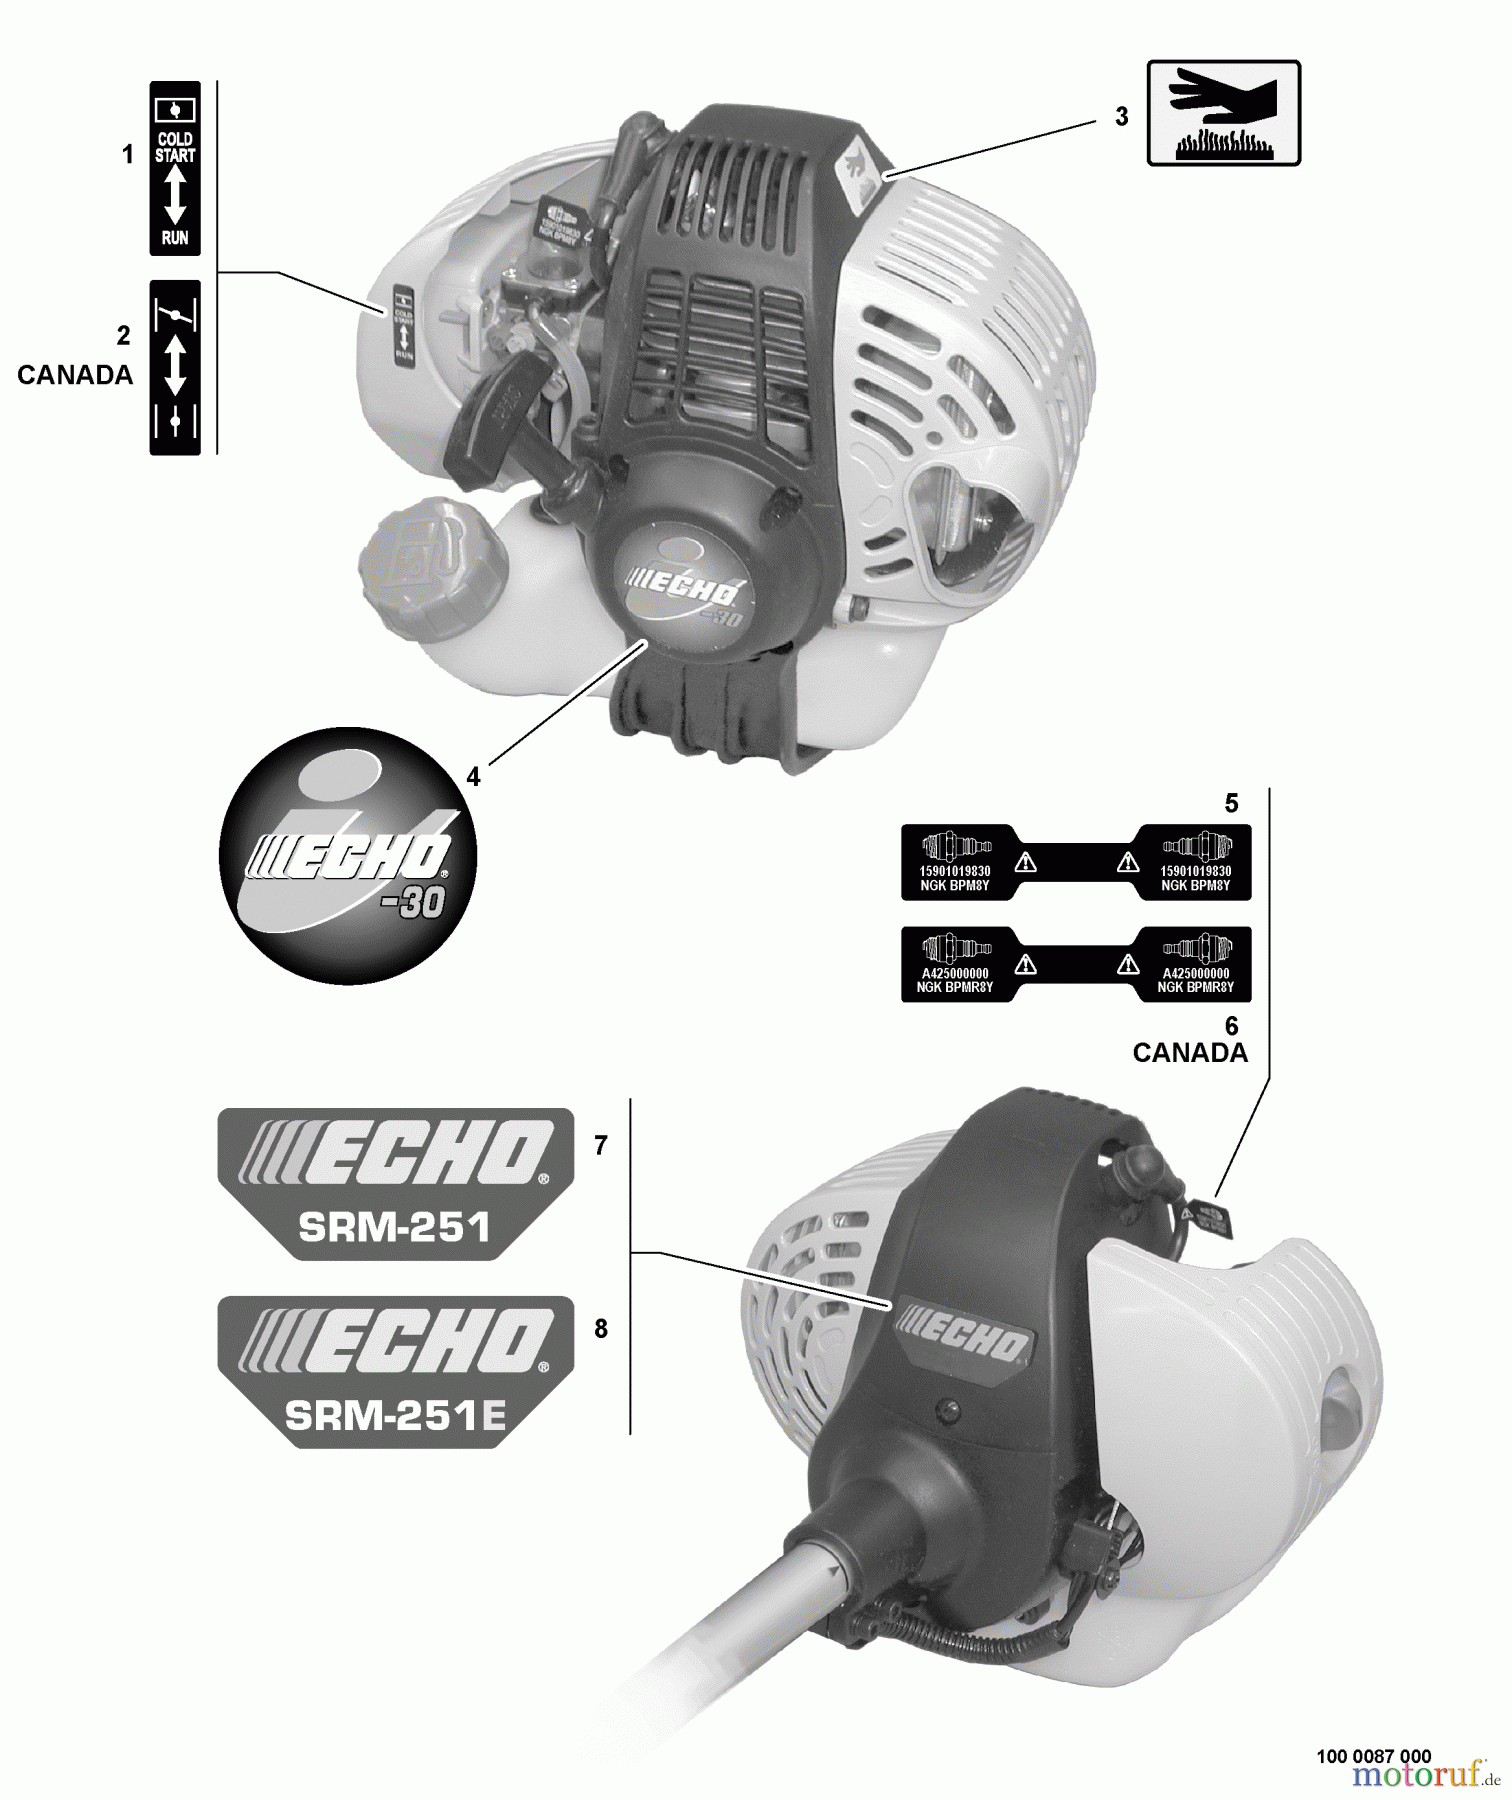  Echo Trimmer, Faden / Bürste SRM-251 - Echo String Trimmer, S/N:09001001 - 09999999 Labels